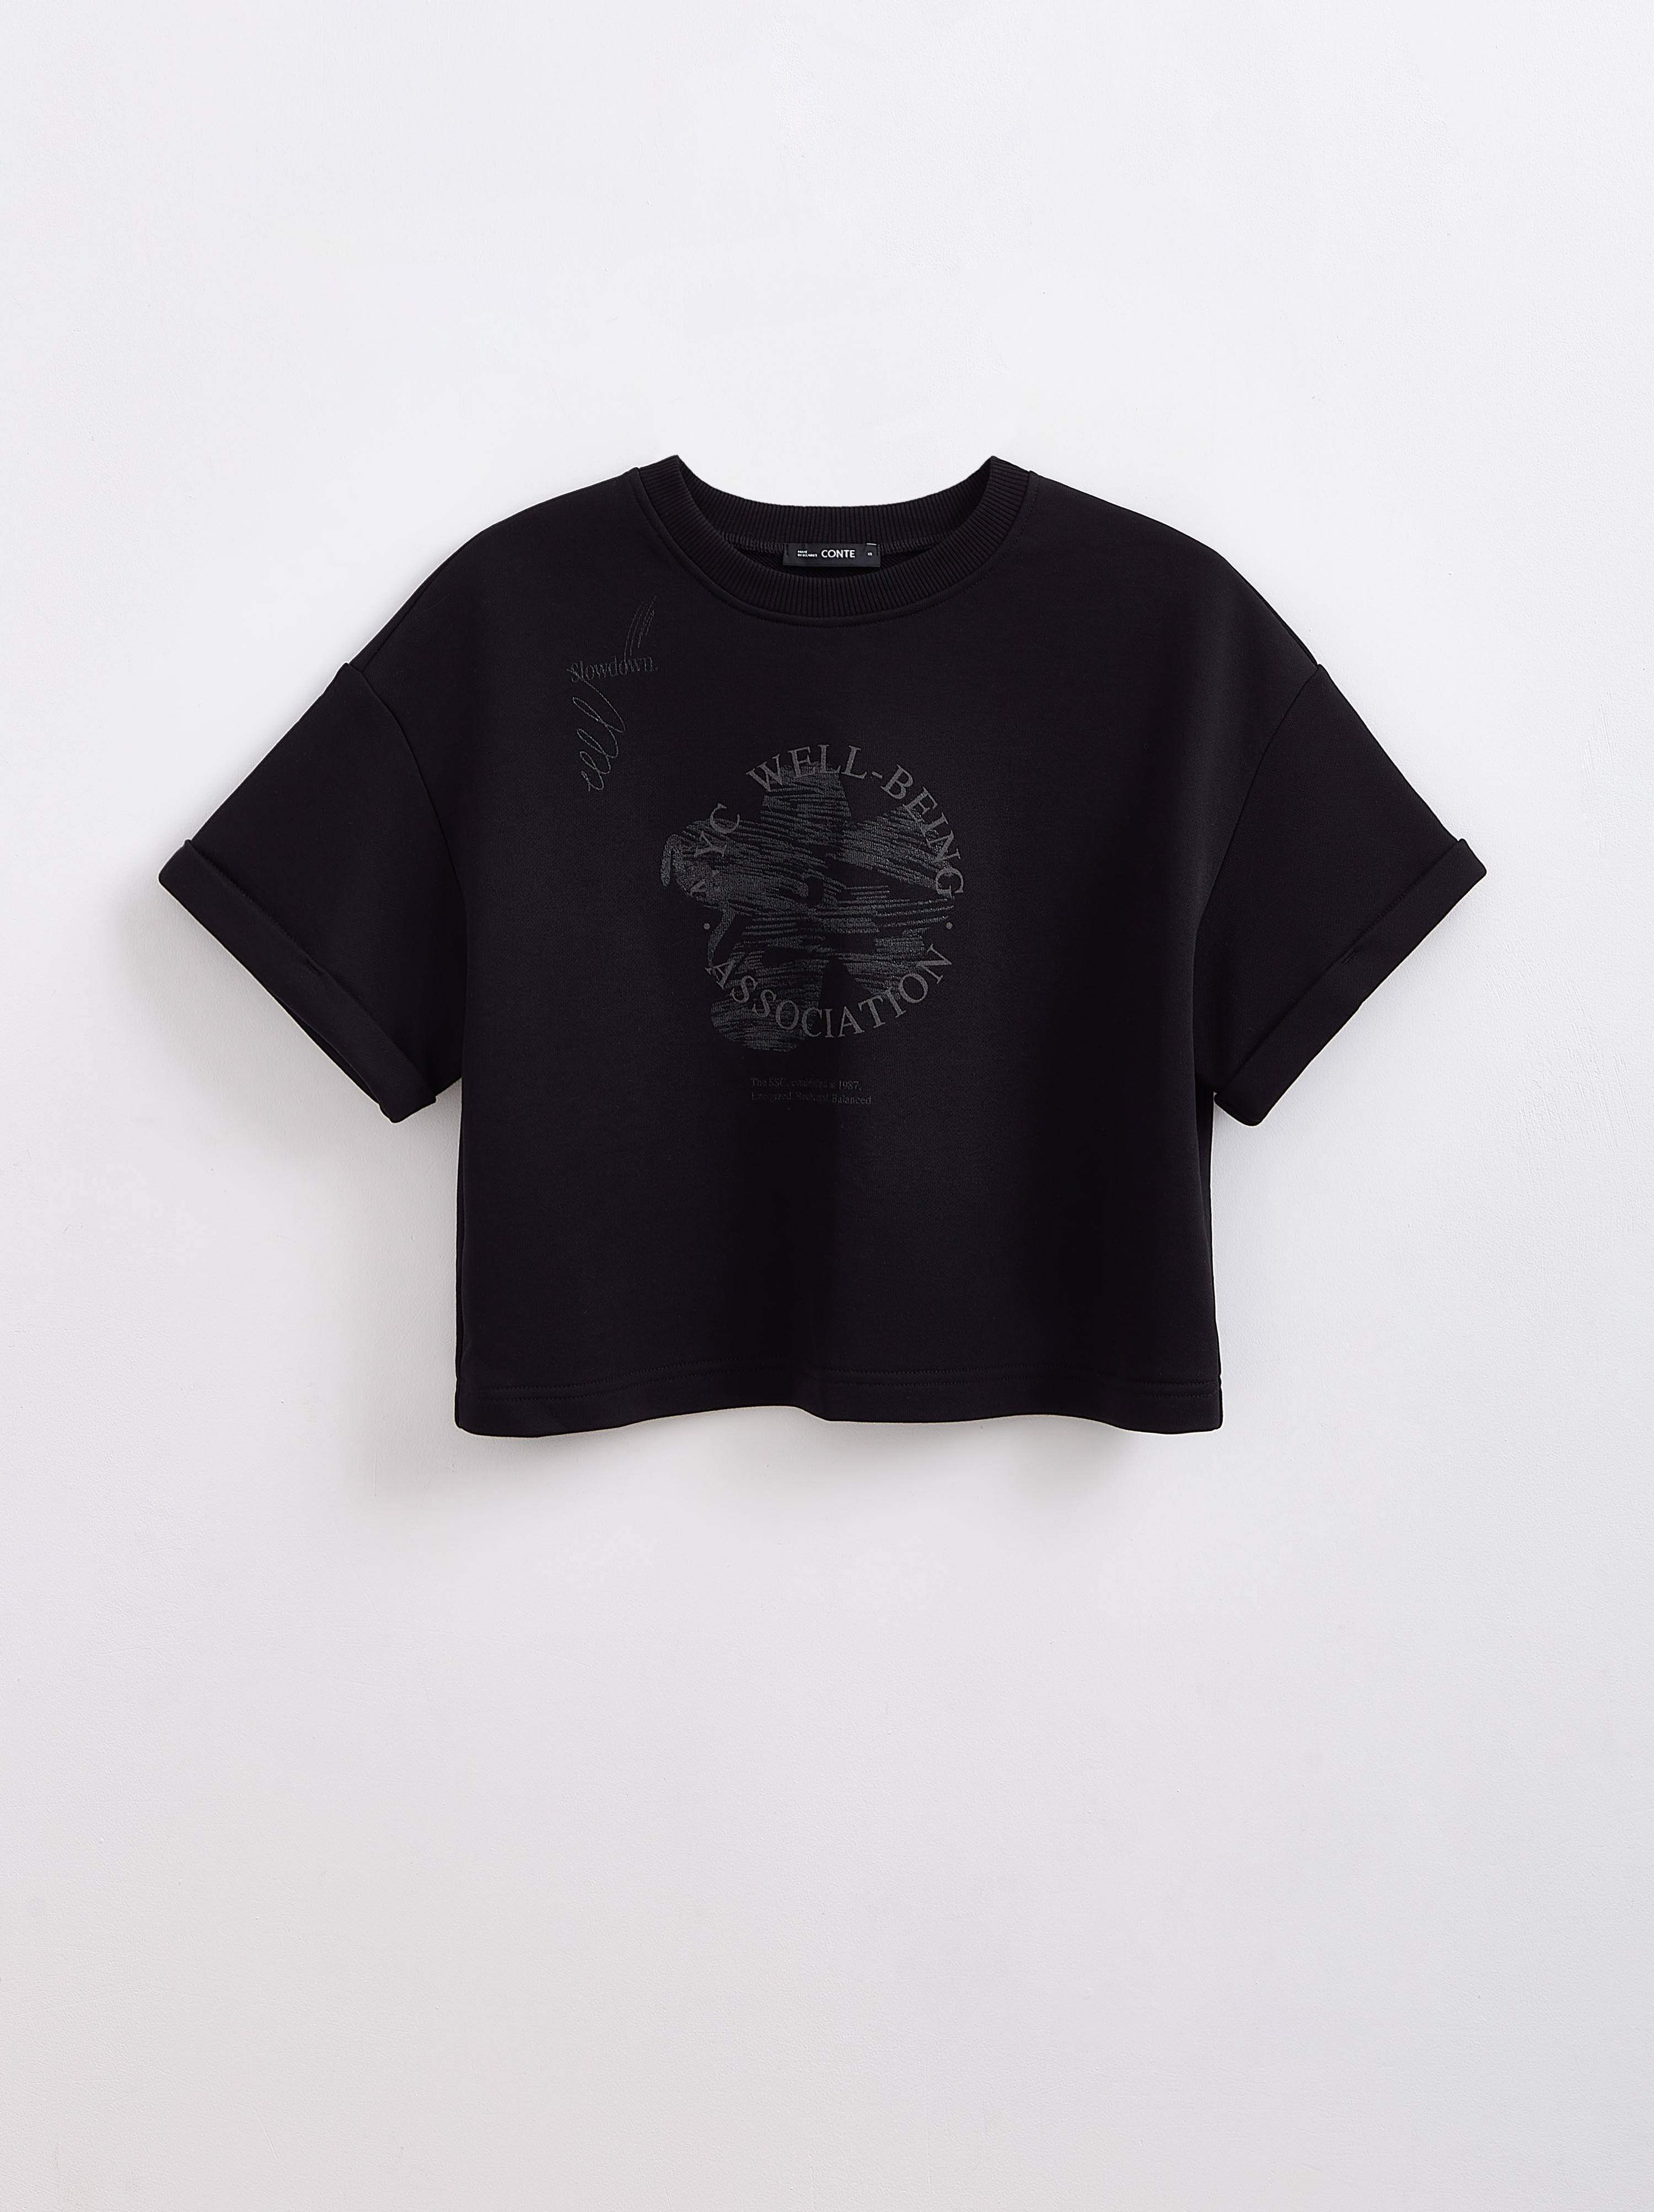 Укороченная футболка из футера с рисунком «Association» LD 2286 Conte ⭐️, цвет black, размер 170-84/xs